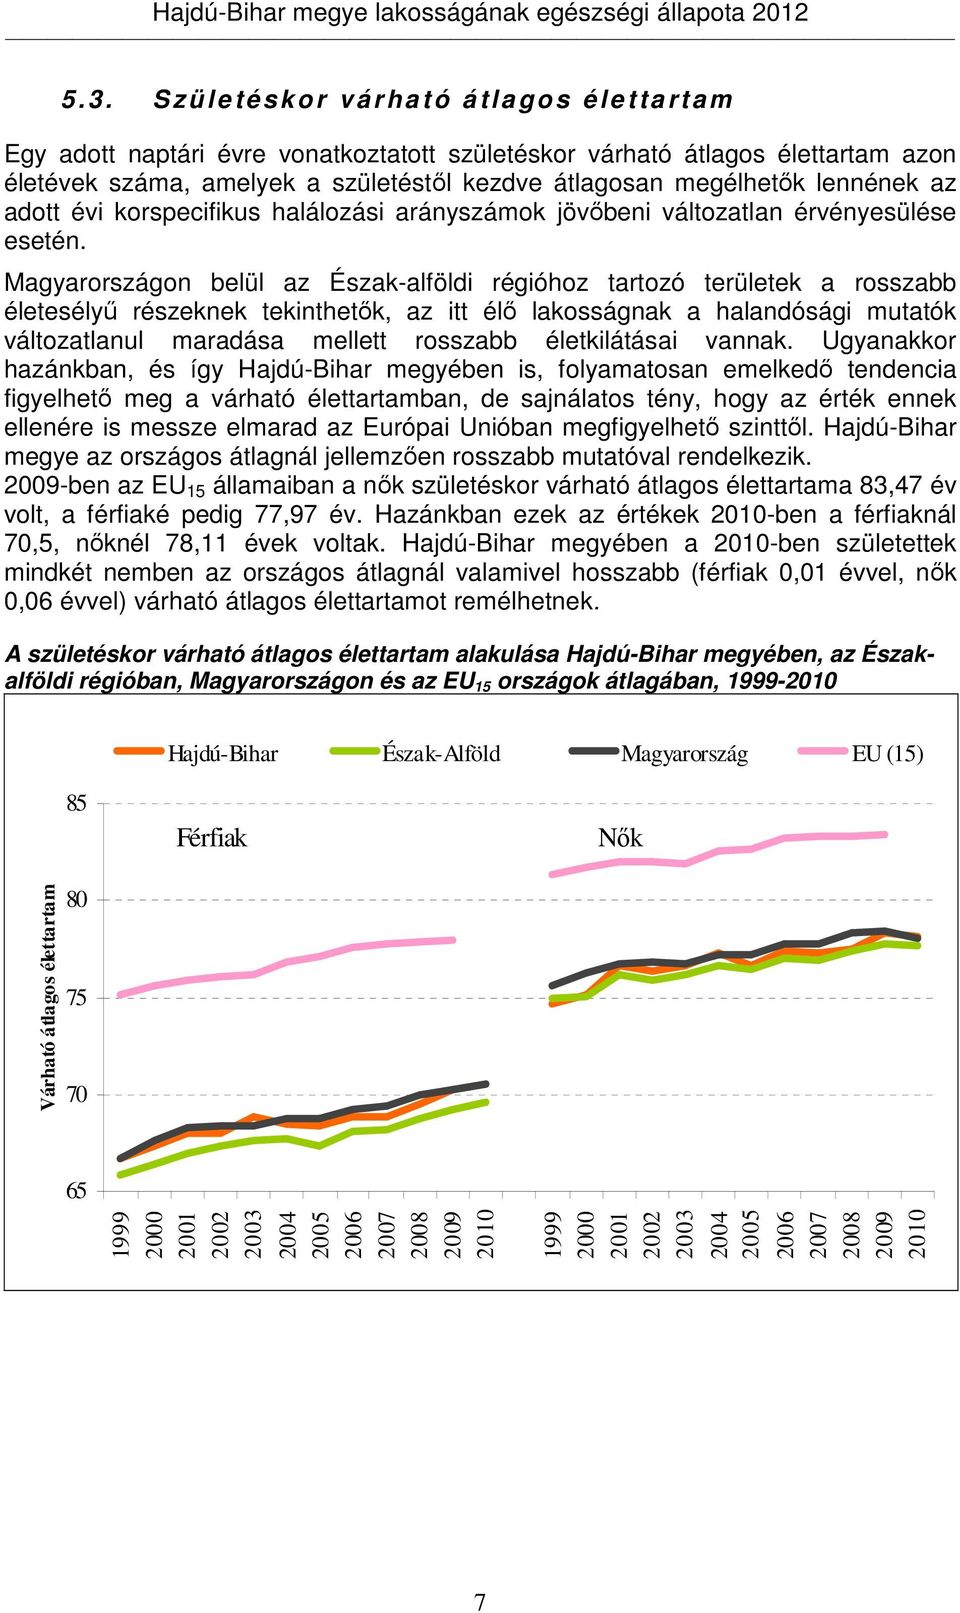 Magyarországon belül az Észak-alföldi régióhoz tartozó területek a rosszabb életesélyő részeknek tekinthetık, az itt élı lakosságnak a halandósági mutatók változatlanul maradása mellett rosszabb